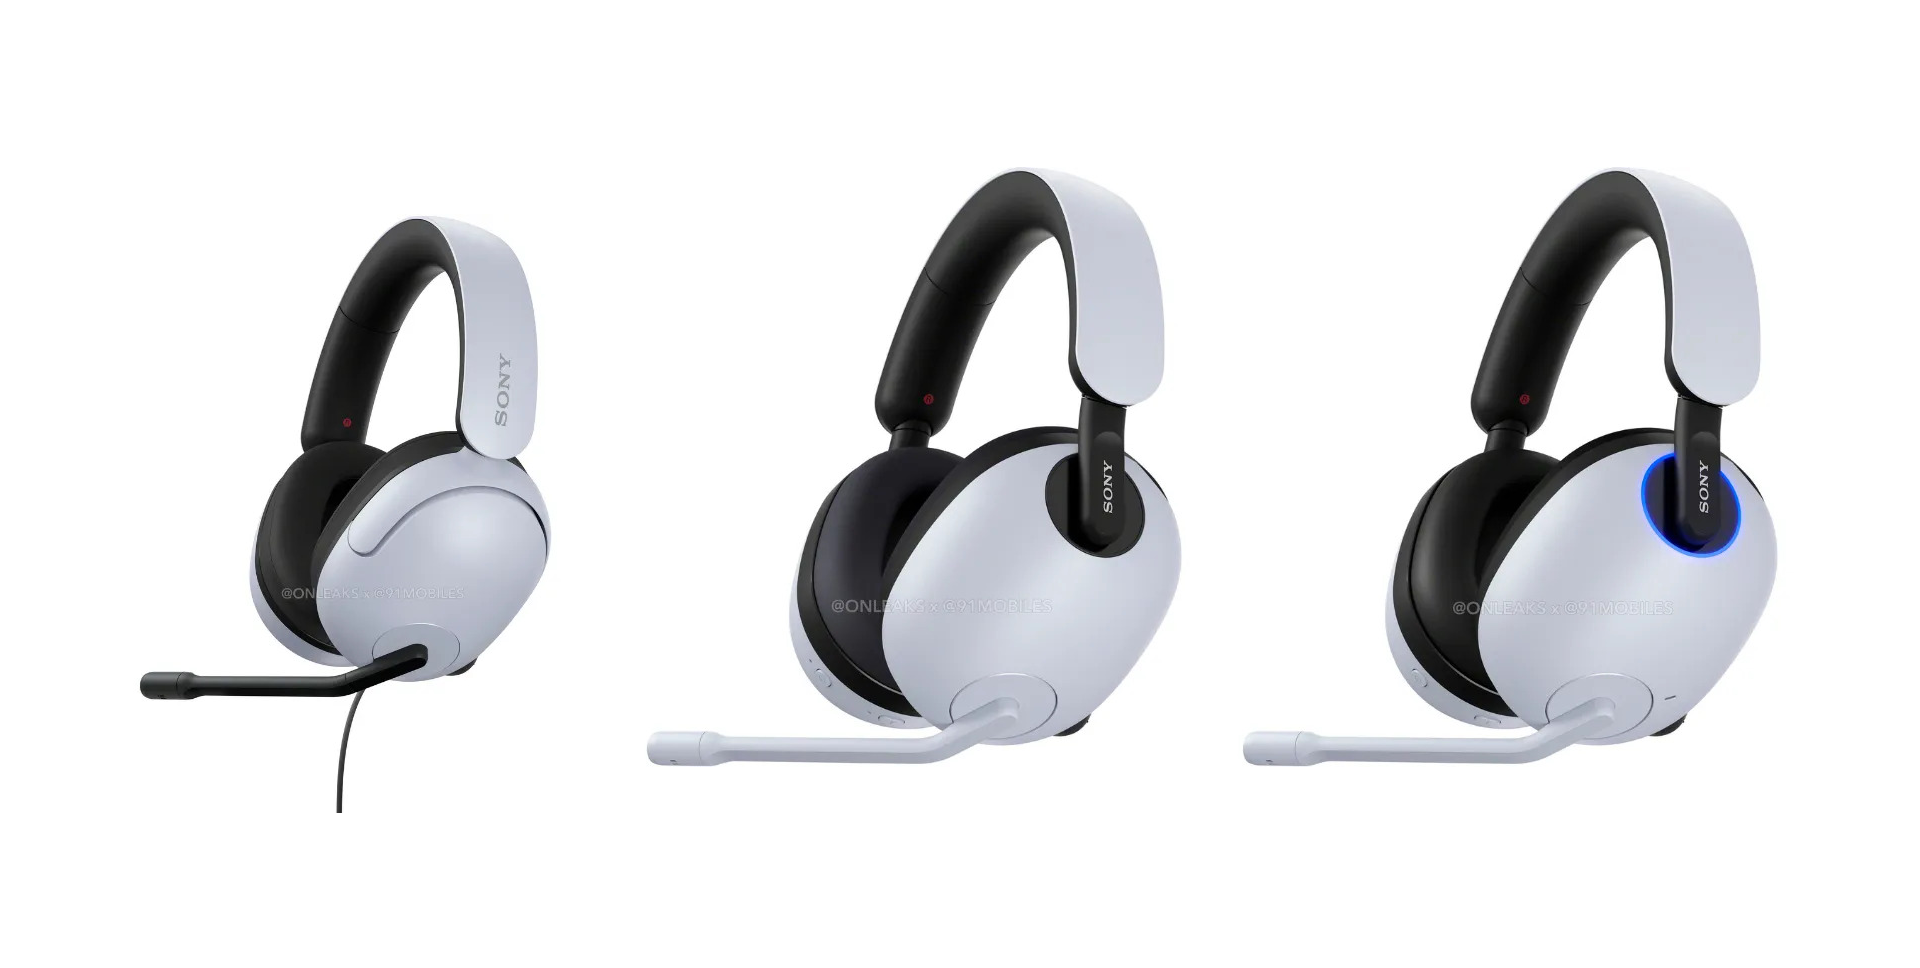 Imagem para Vê imagens do novos headsets Inzone H3, H7 e H9 da PlayStation